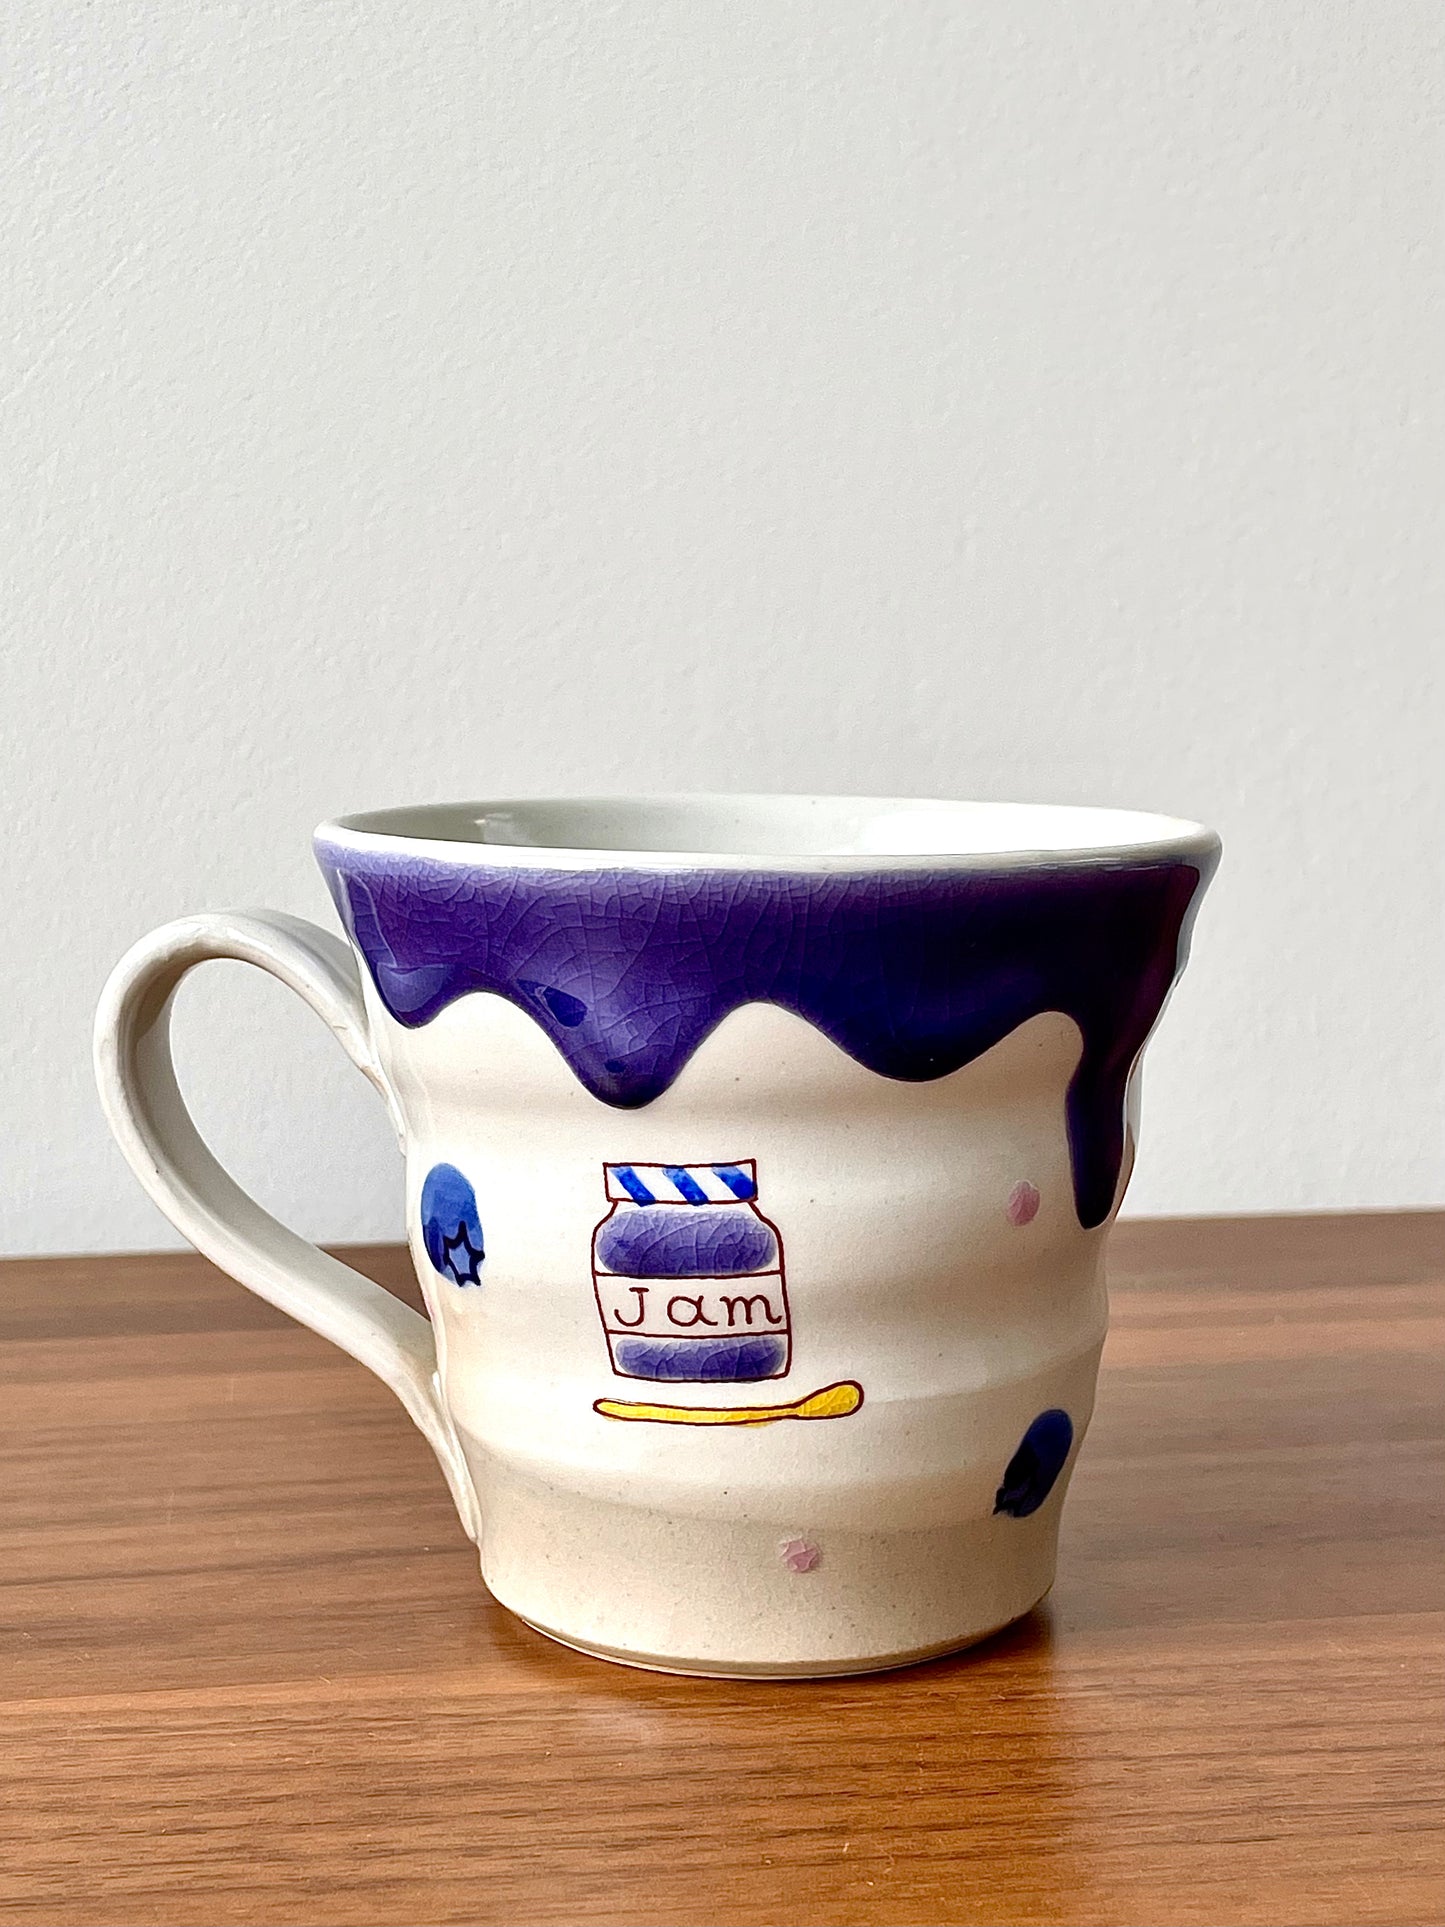 Mug with Jam Box Print